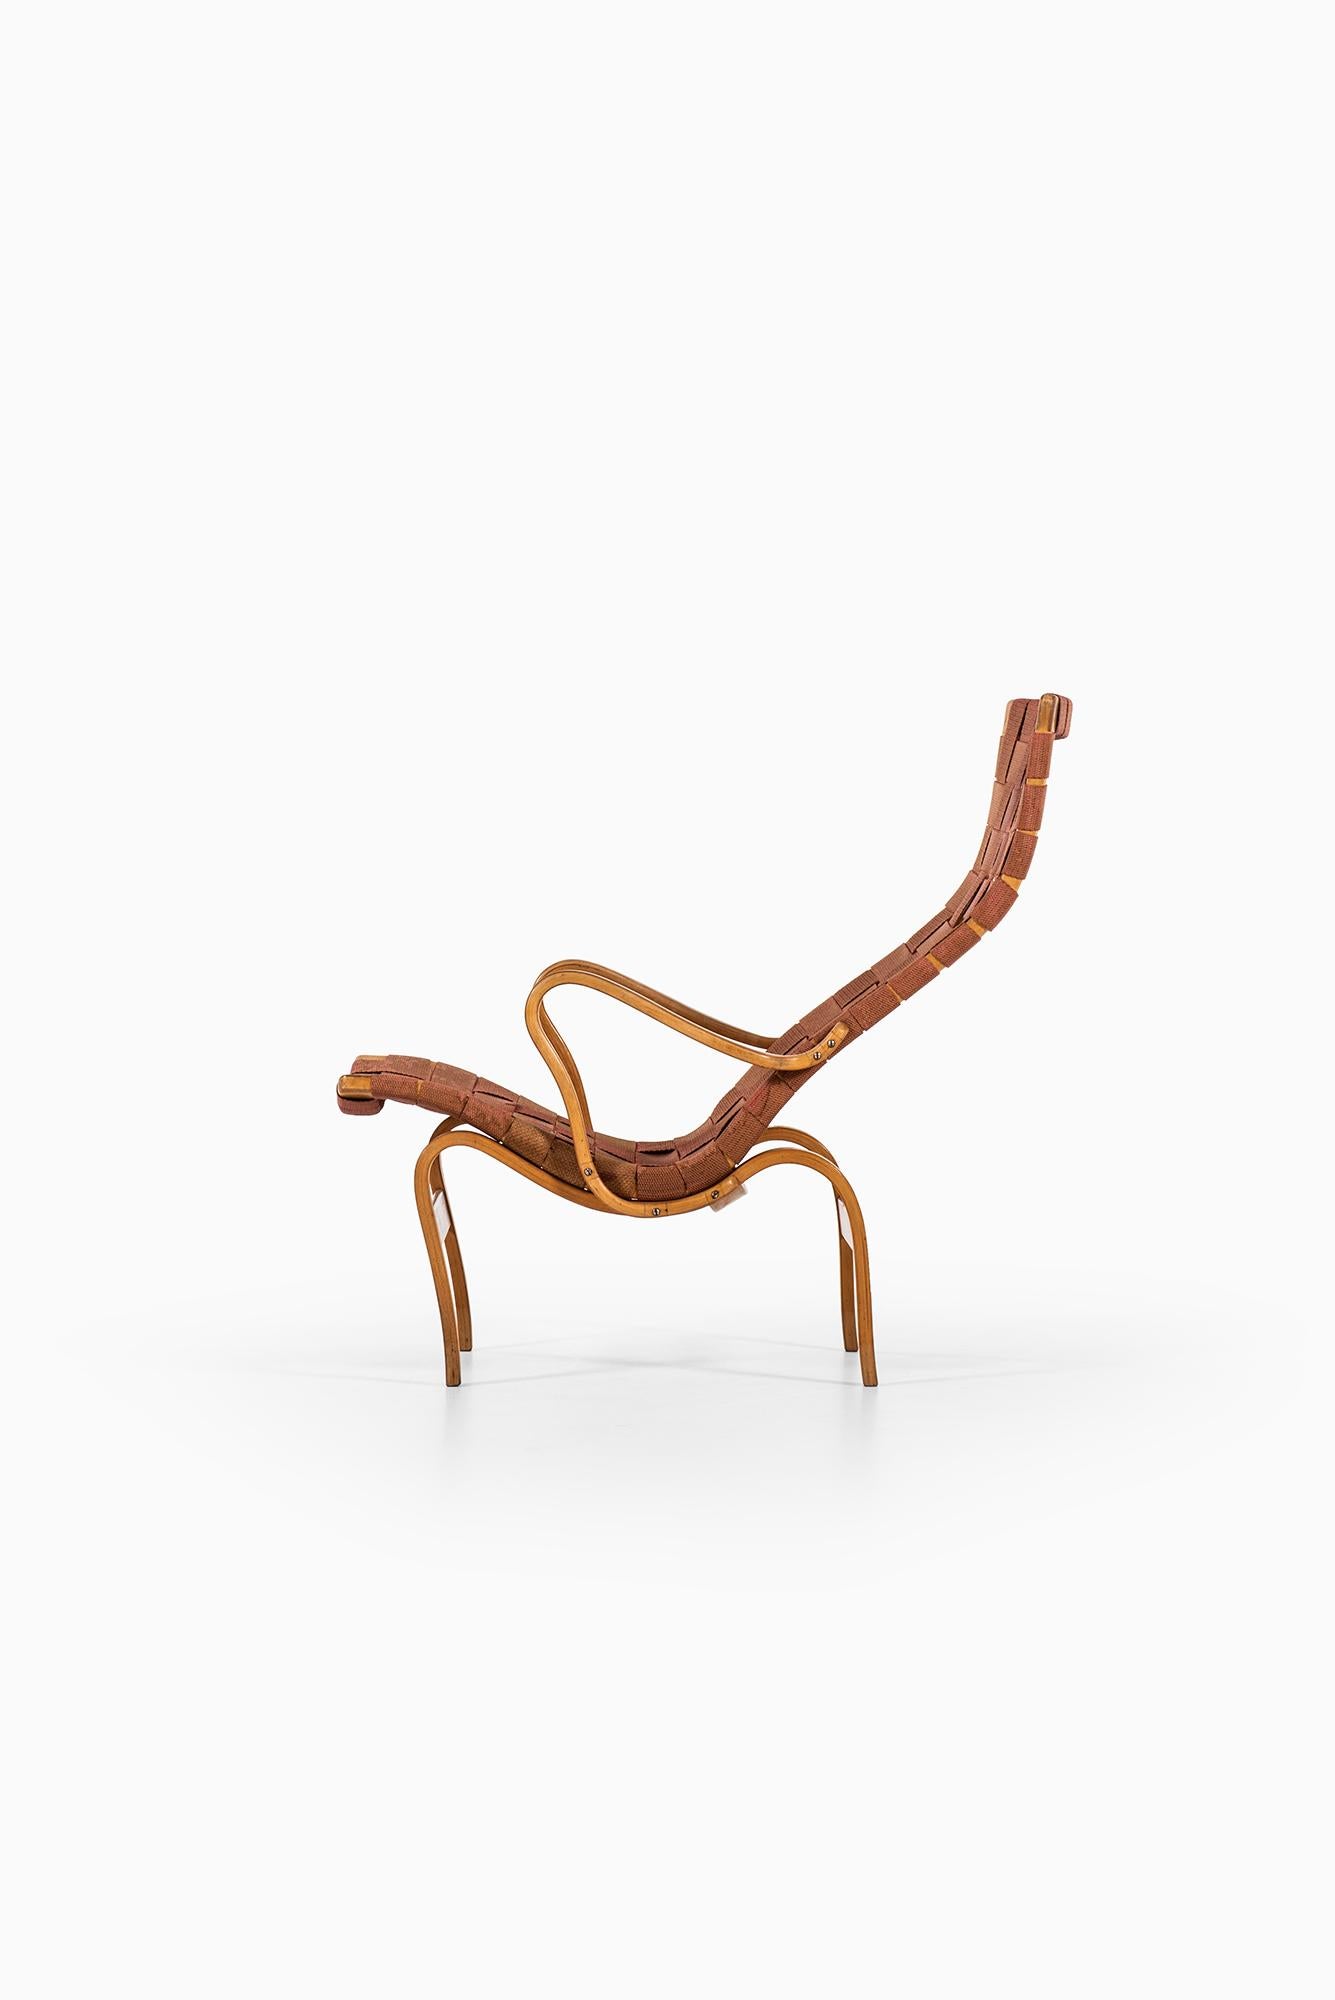 Easy chair model Pernilla designed by Bruno Mathsson. Produced by Karl Mathsson AB in Värnamo, Sweden.